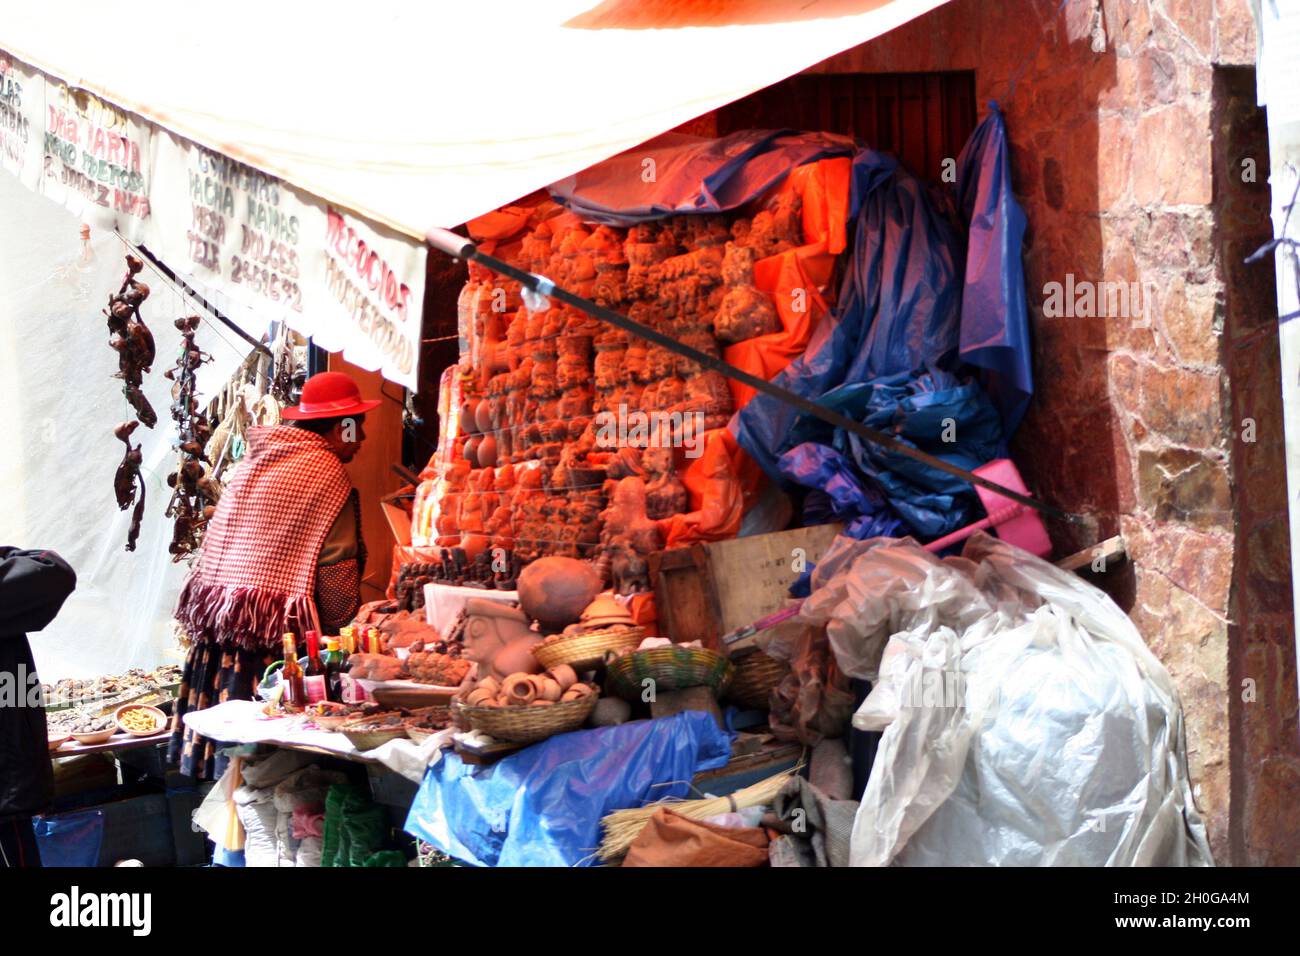 Una donna locale in una bancarella di mercato nel mercato delle streghe, la Paz, Bolivia Foto Stock